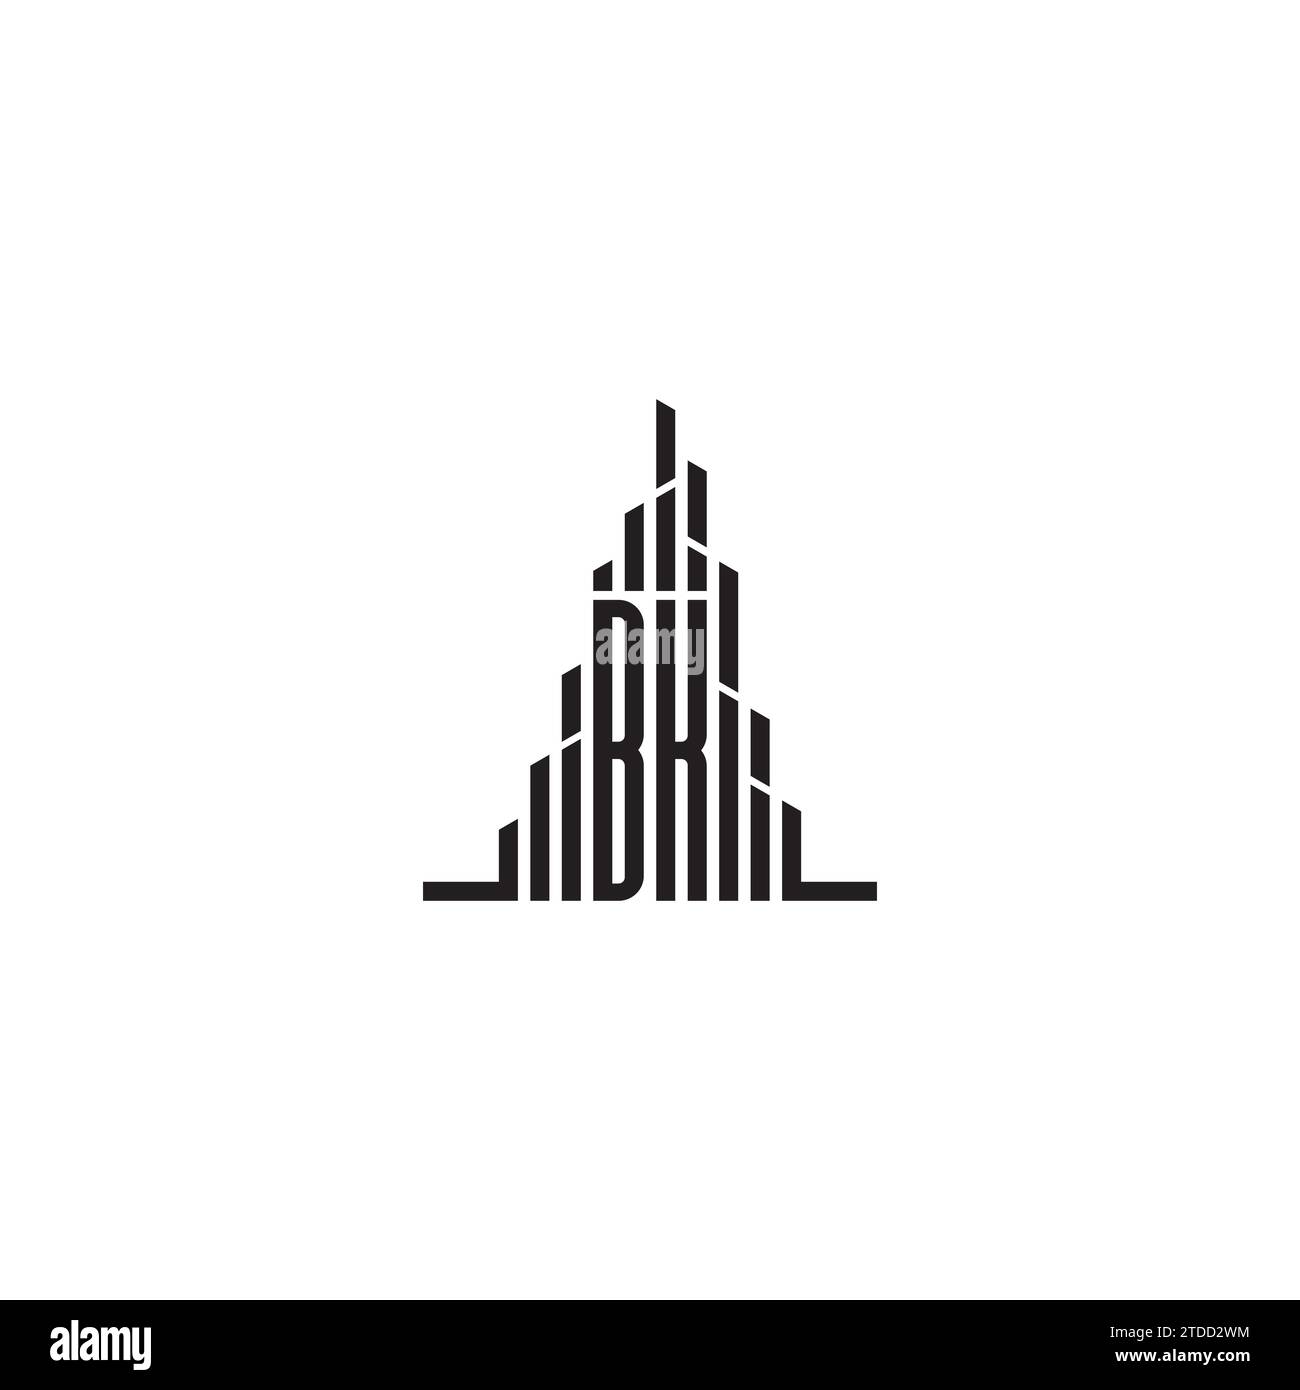 Logo iniziale del grattacielo BK con design professionale di alta qualità che si adatta perfettamente a qualsiasi supporto di stampa Illustrazione Vettoriale